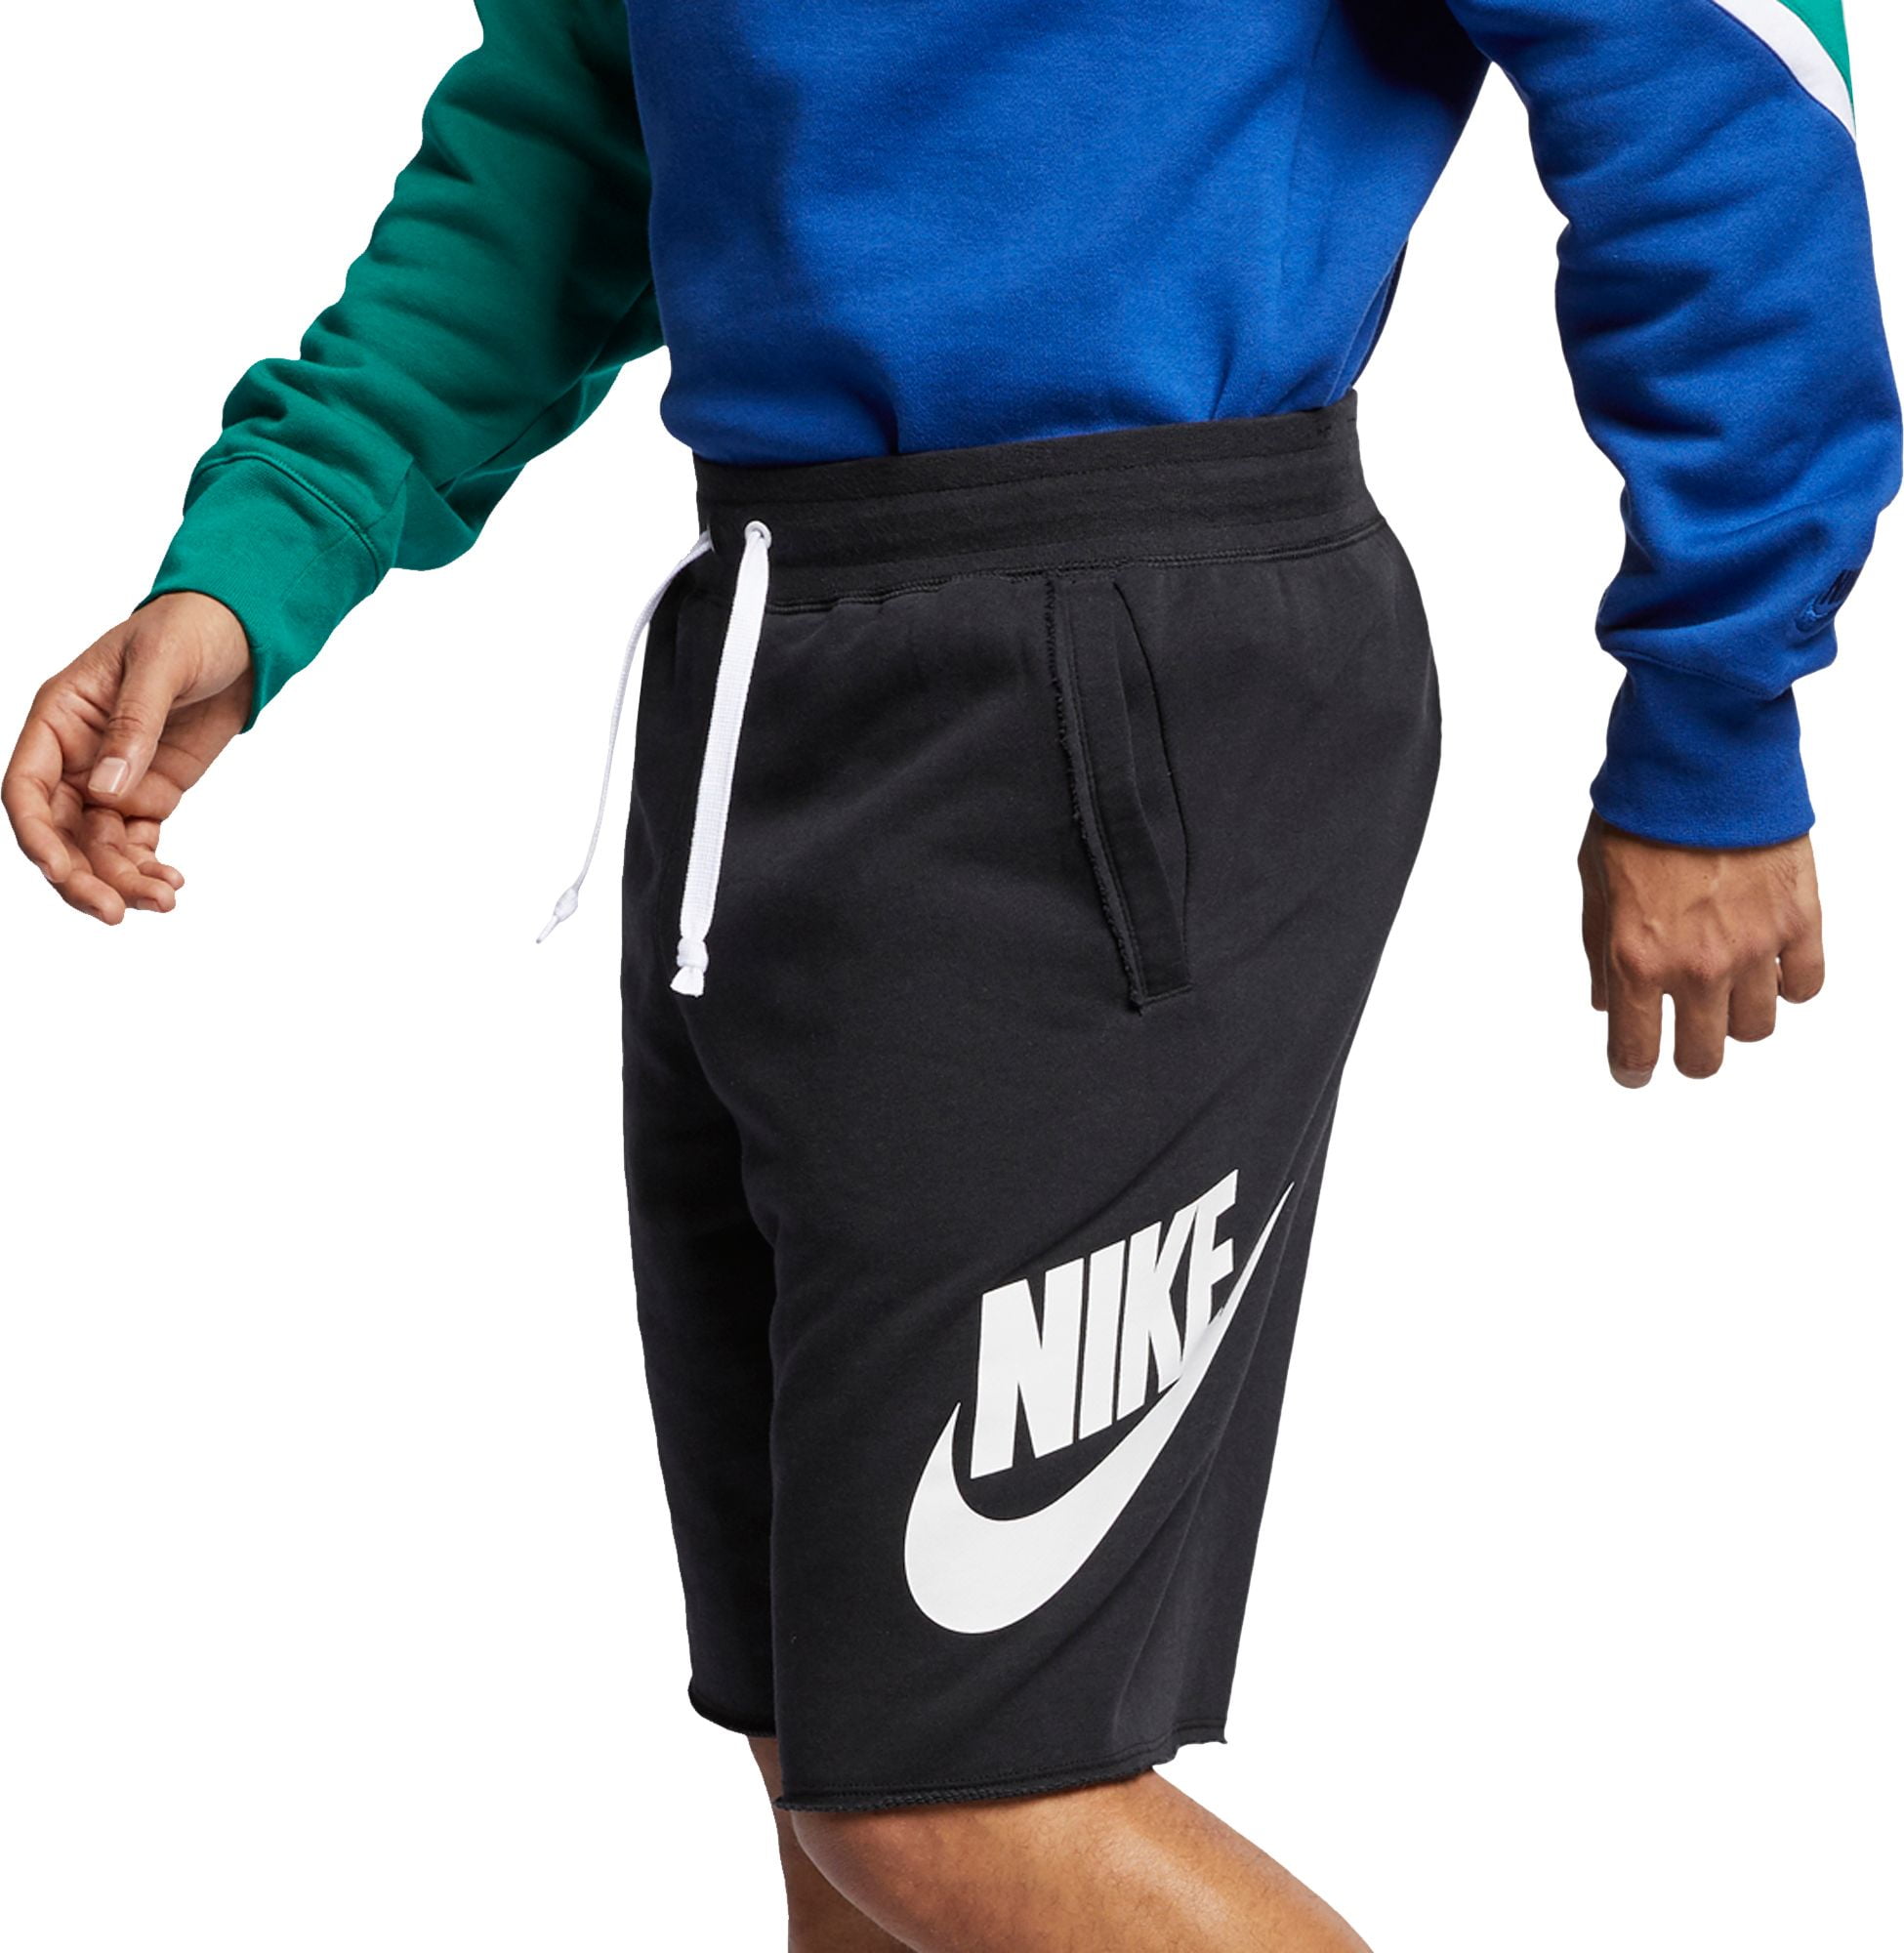 nike men's sportswear alumni shorts